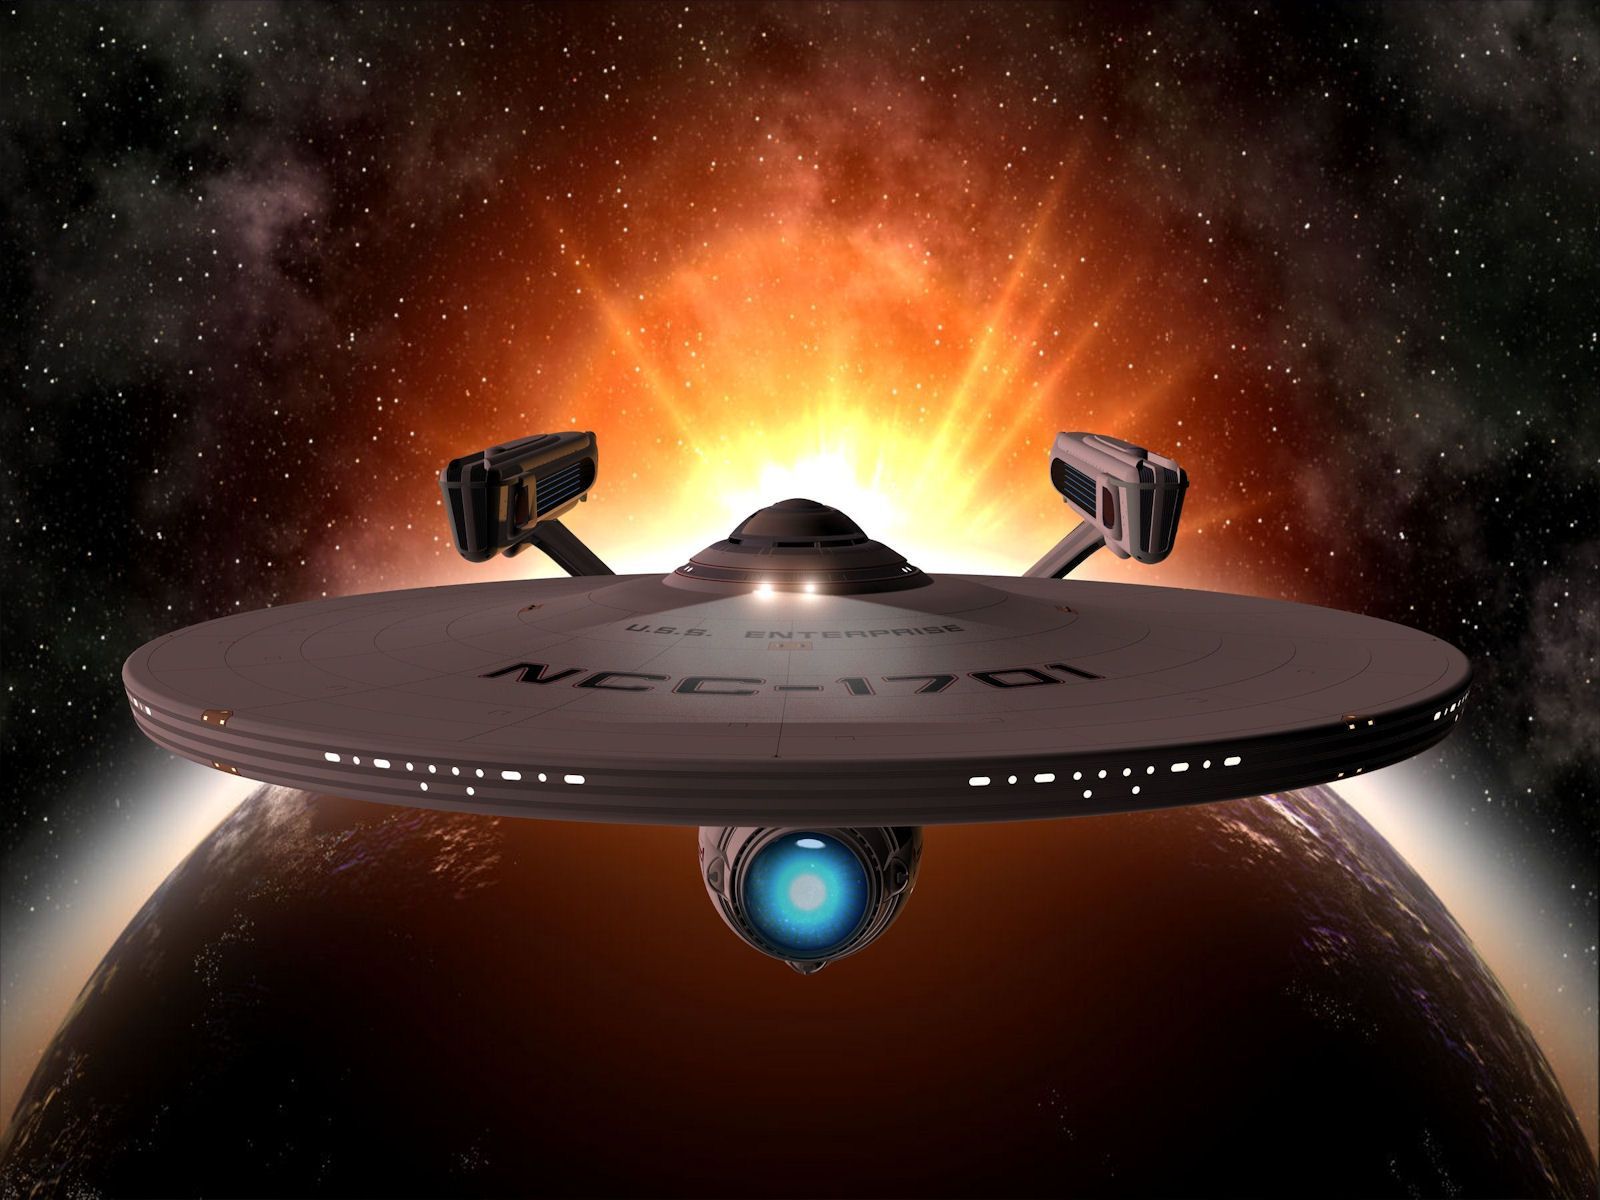 NCC 1701 A. Star Trek Enterprise, Star Trek Enterprise Ship, Star Trek Starships